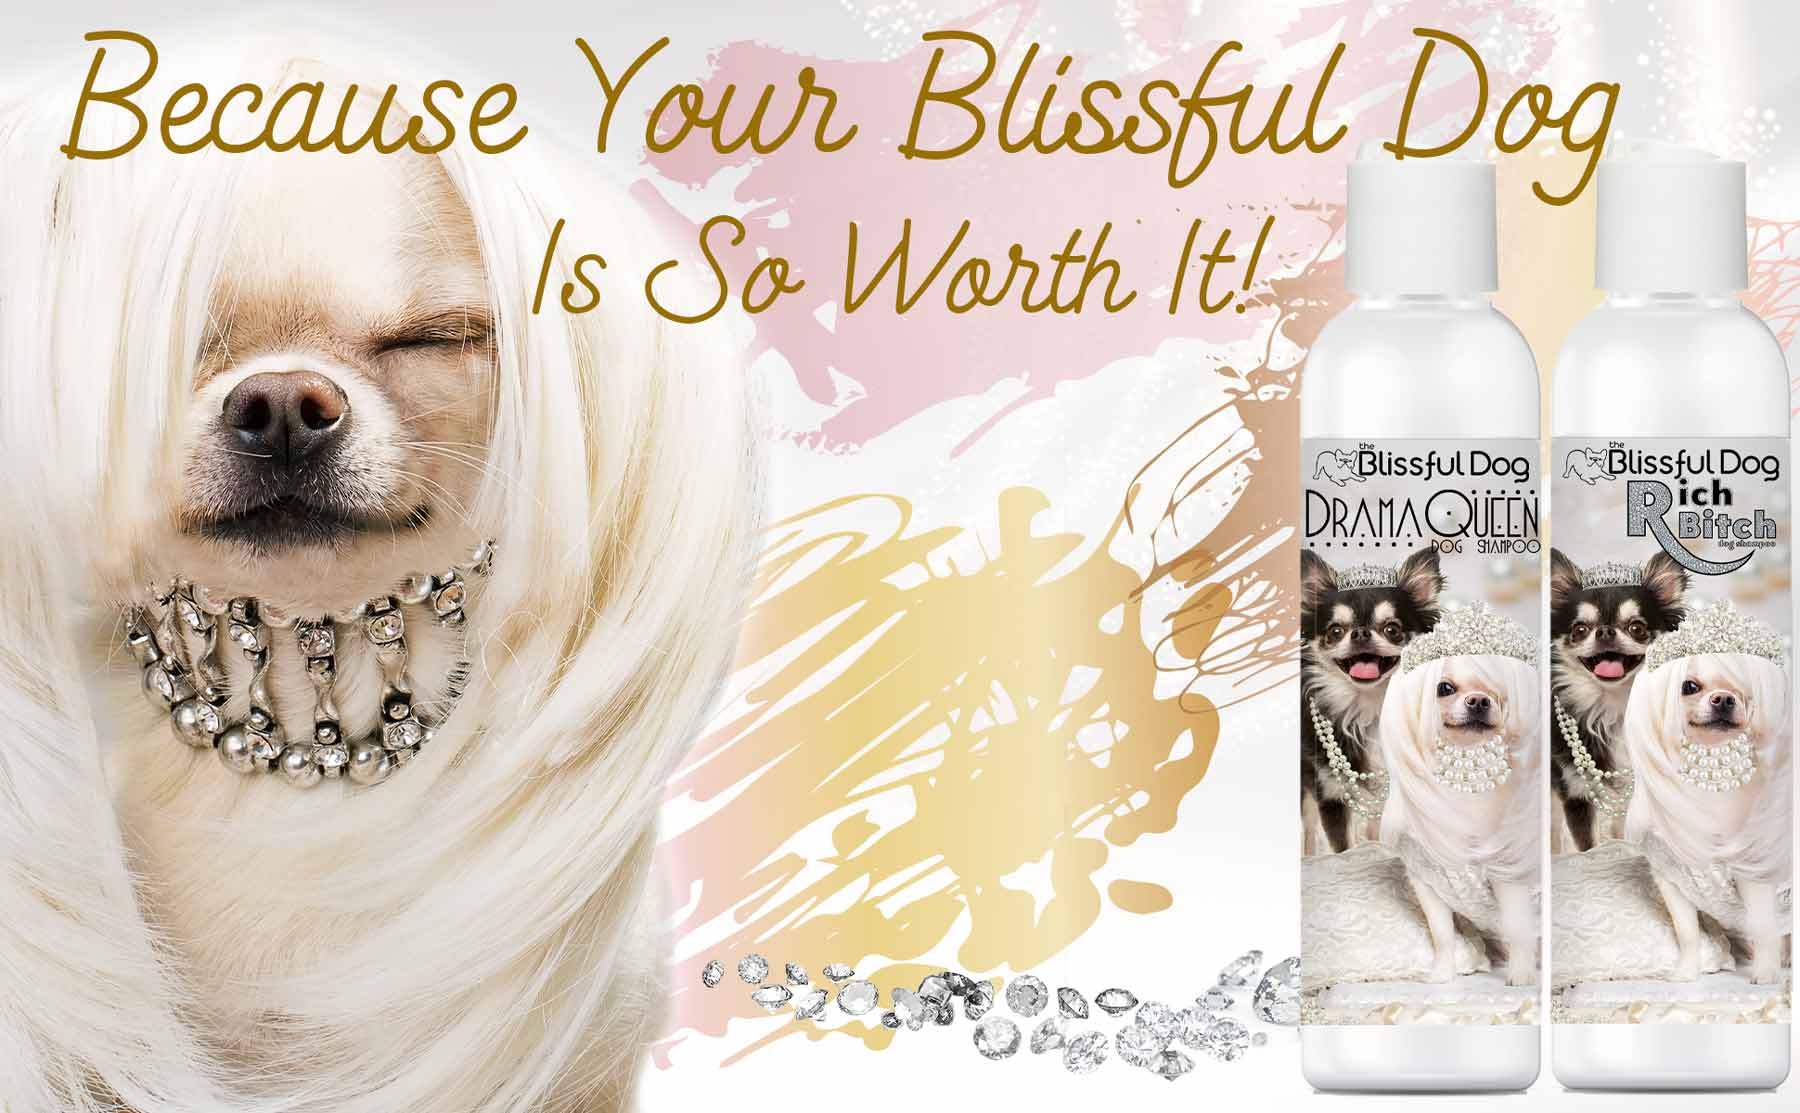 The Blissful Dog Luxury Shampoo Moisturizes & Cleanses